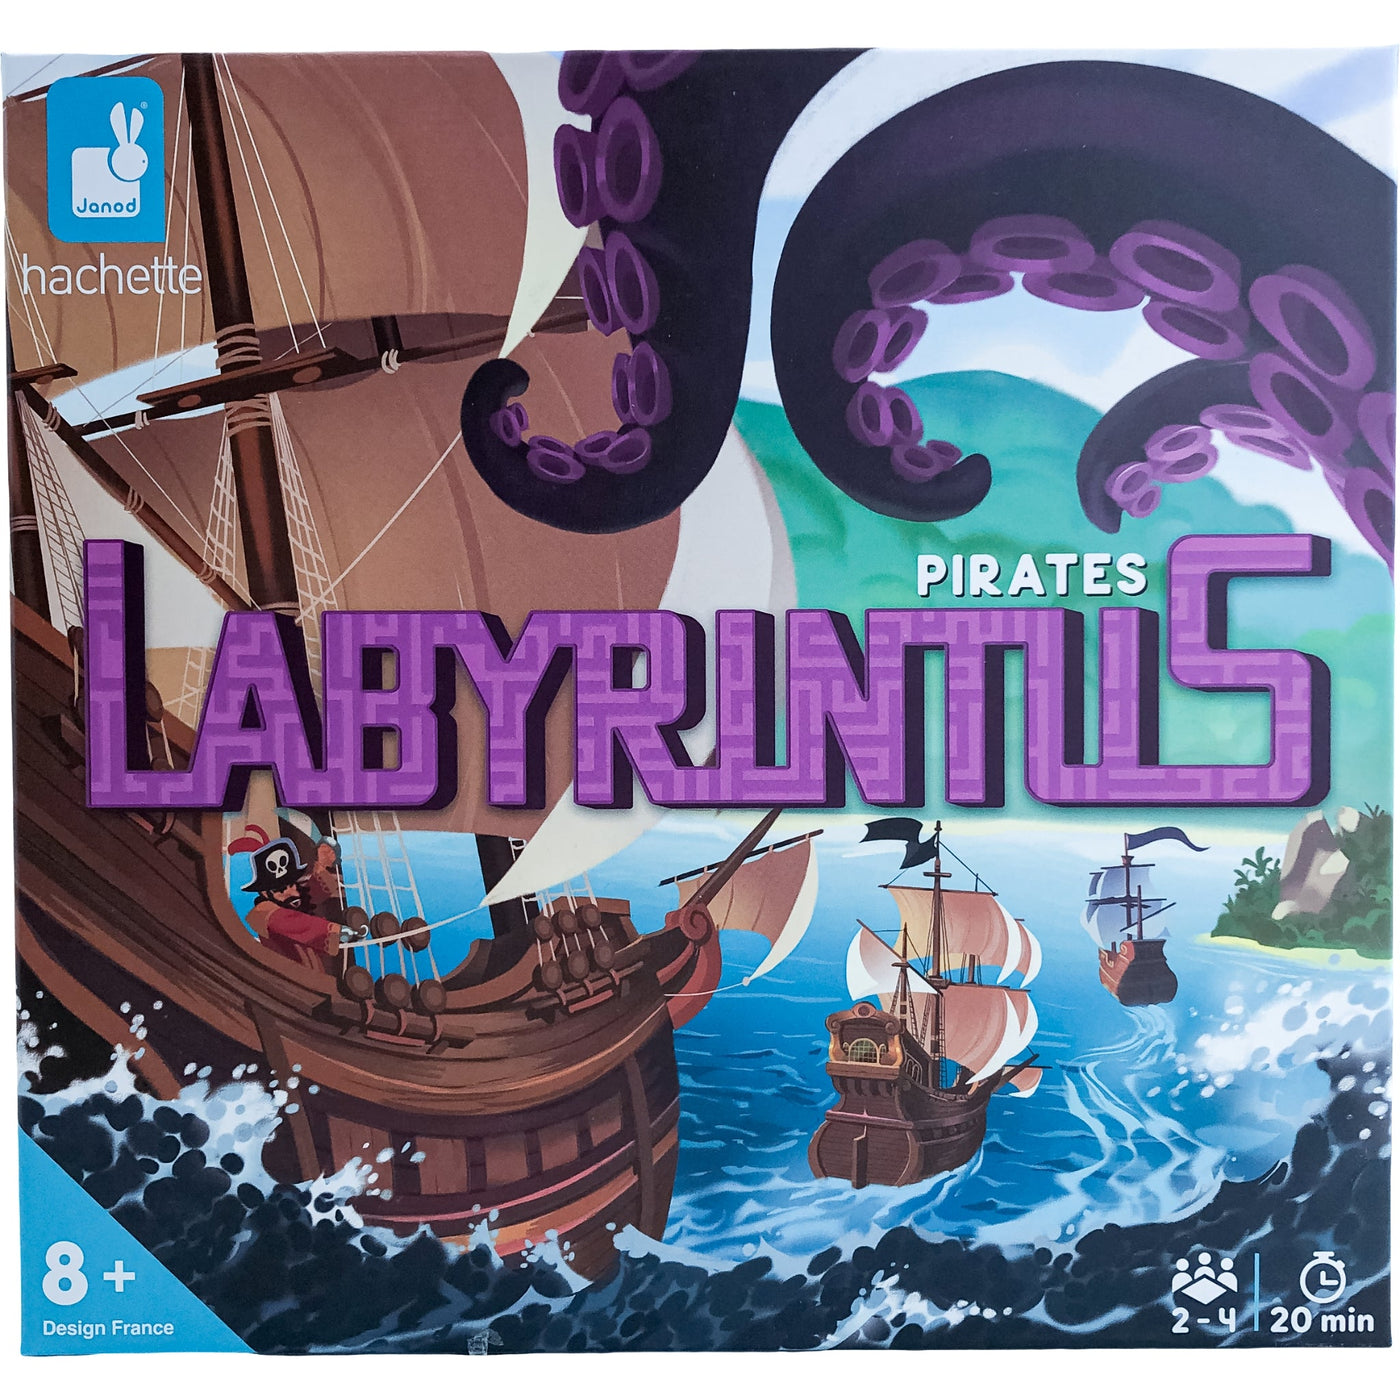 Coffret à thème "Labyrintus Pirates" de seconde main pour enfant à partir de 6 ans - photo principale